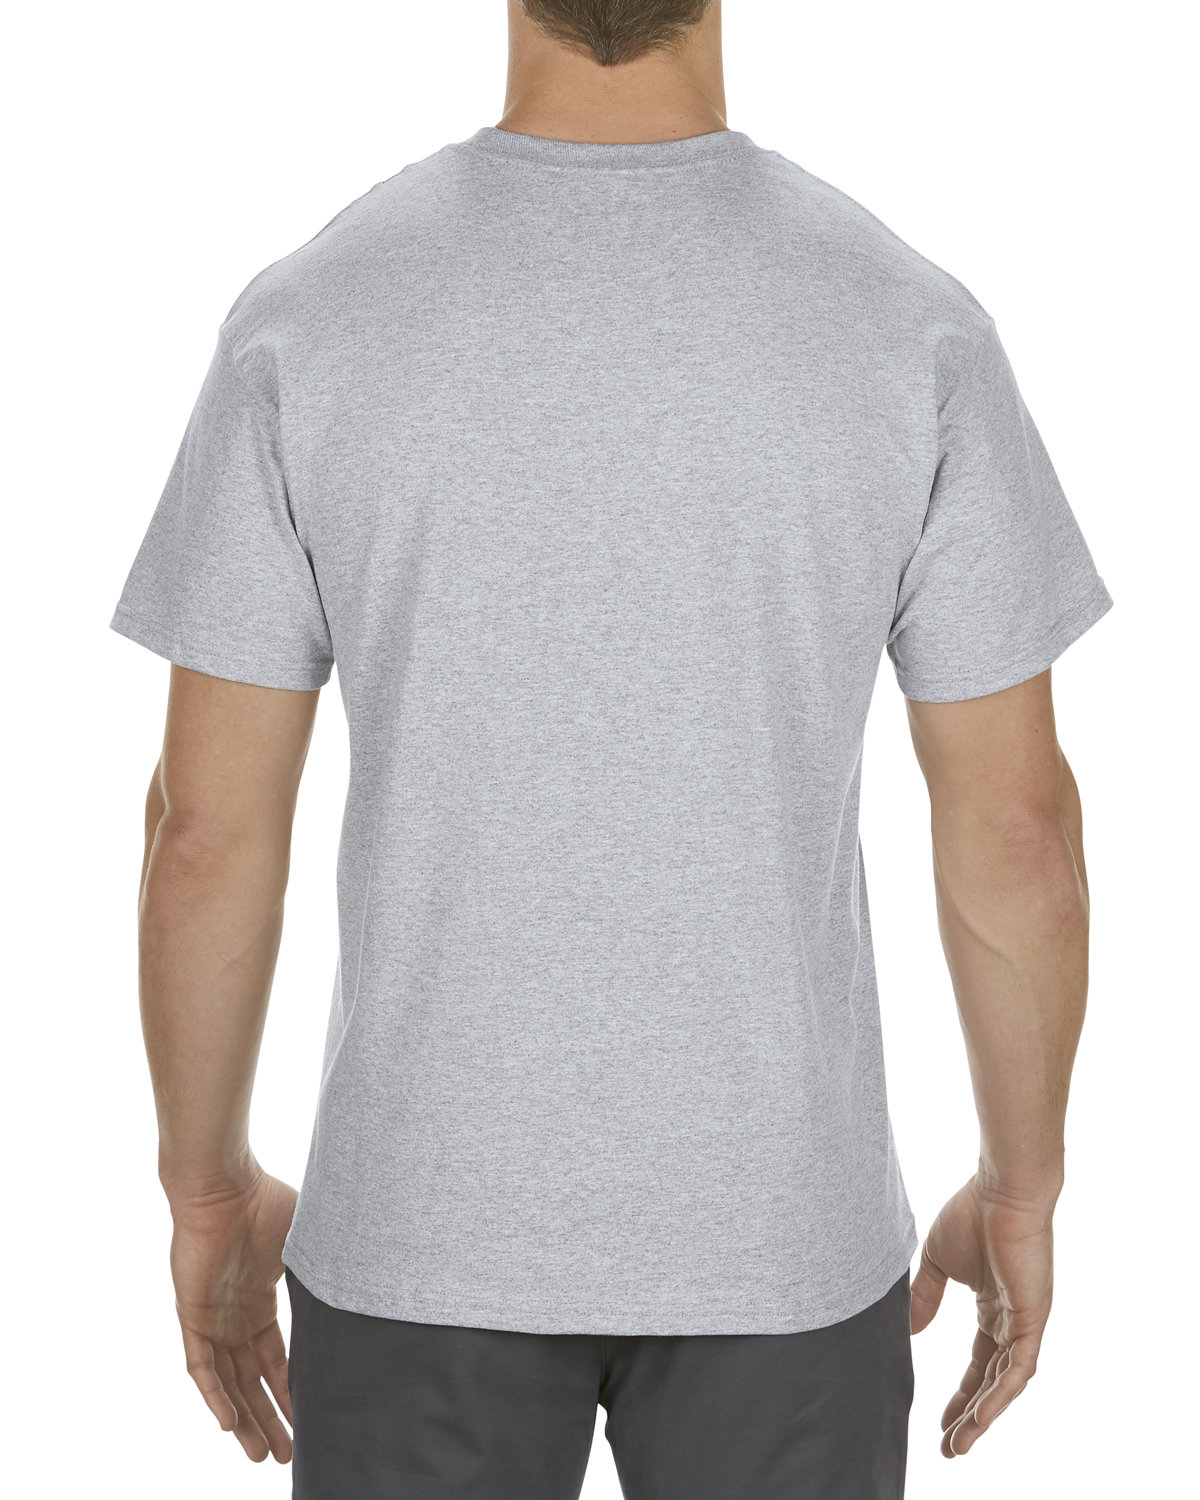 Alstyle Adult 5.5 oz., 100% Soft Spun Cotton T-Shirt | US Generic Non ...